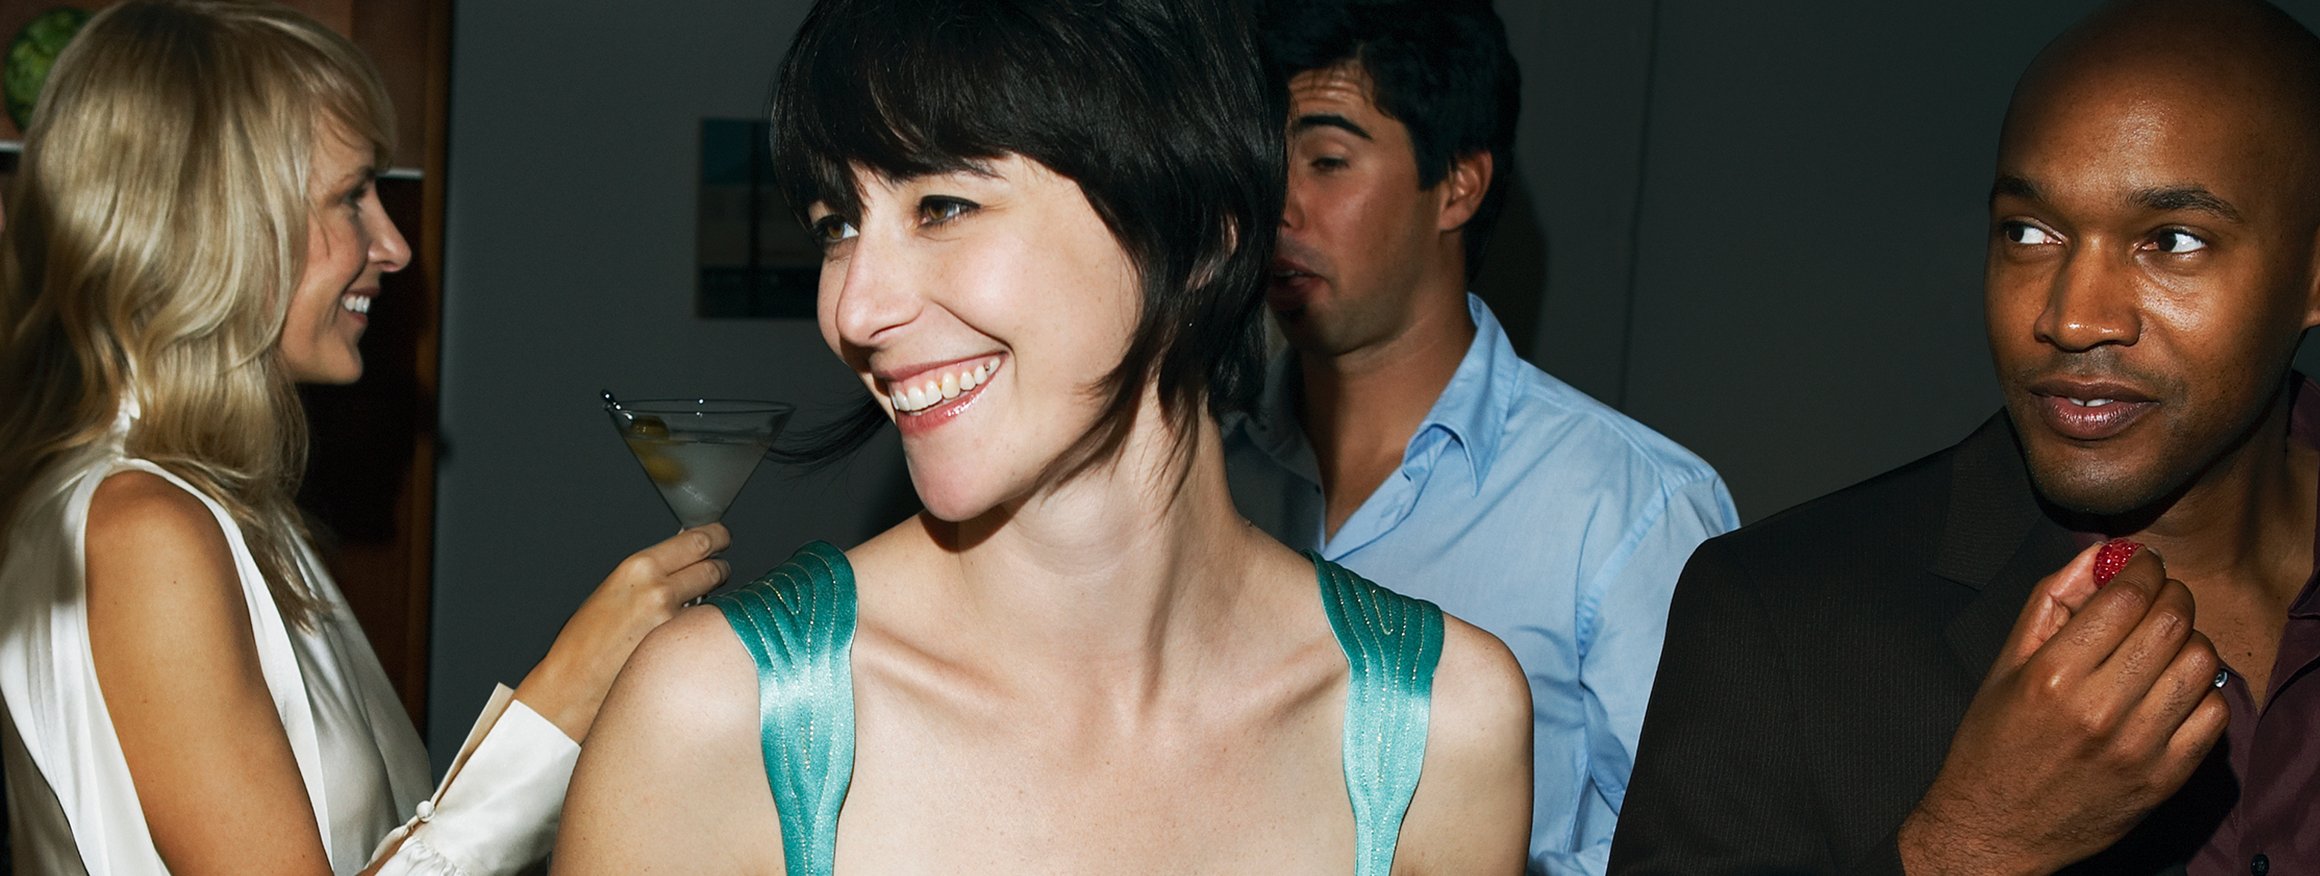 Eine junge Frau steht mit einem Cocktail lachend in einer Gruppe von Menschen auf einer Party